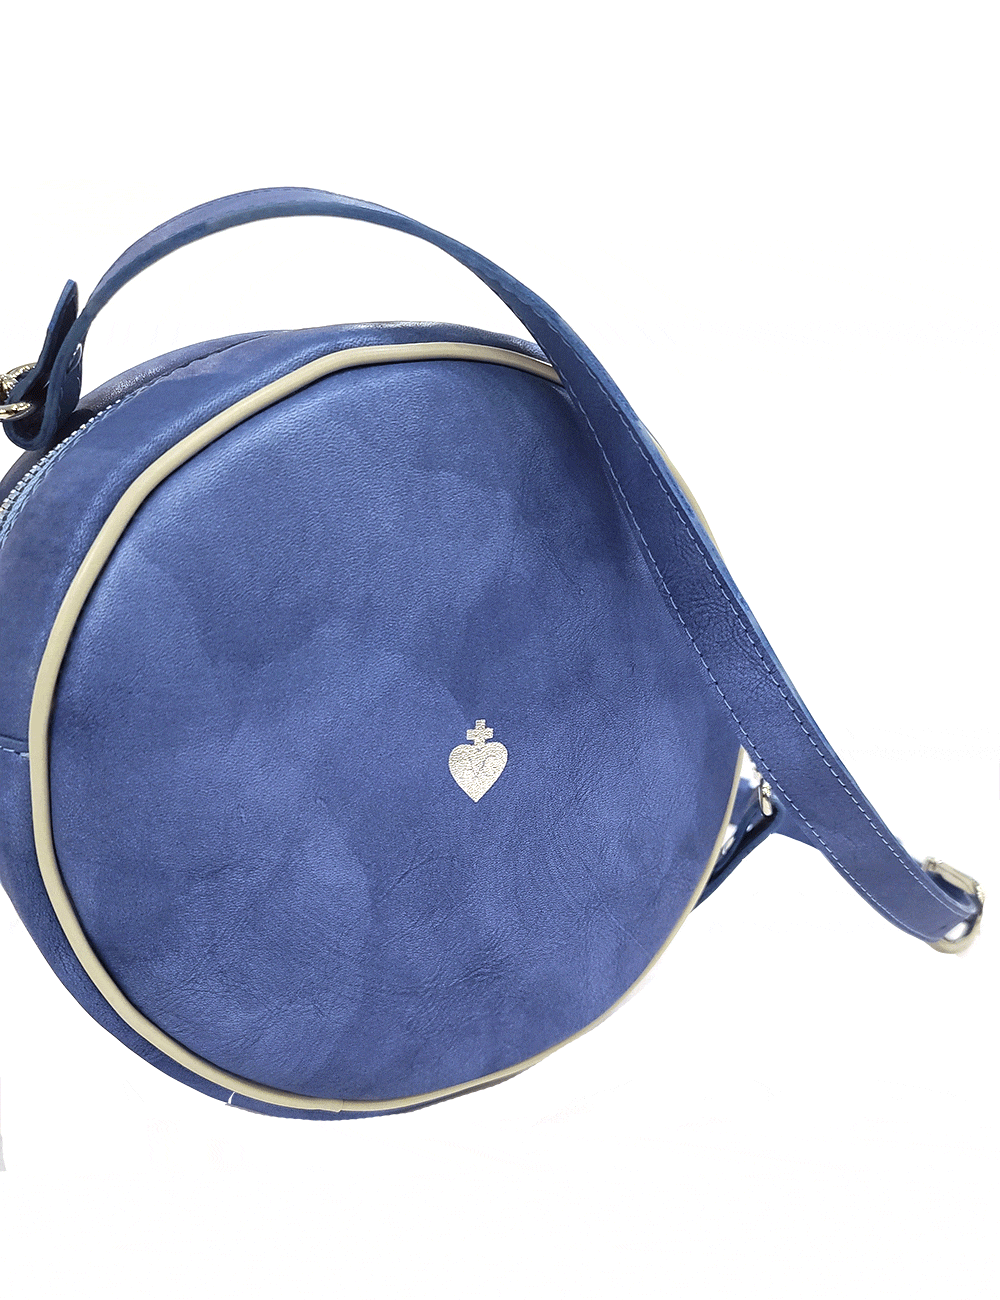 Marilyn’s French Electric Blue Handbag